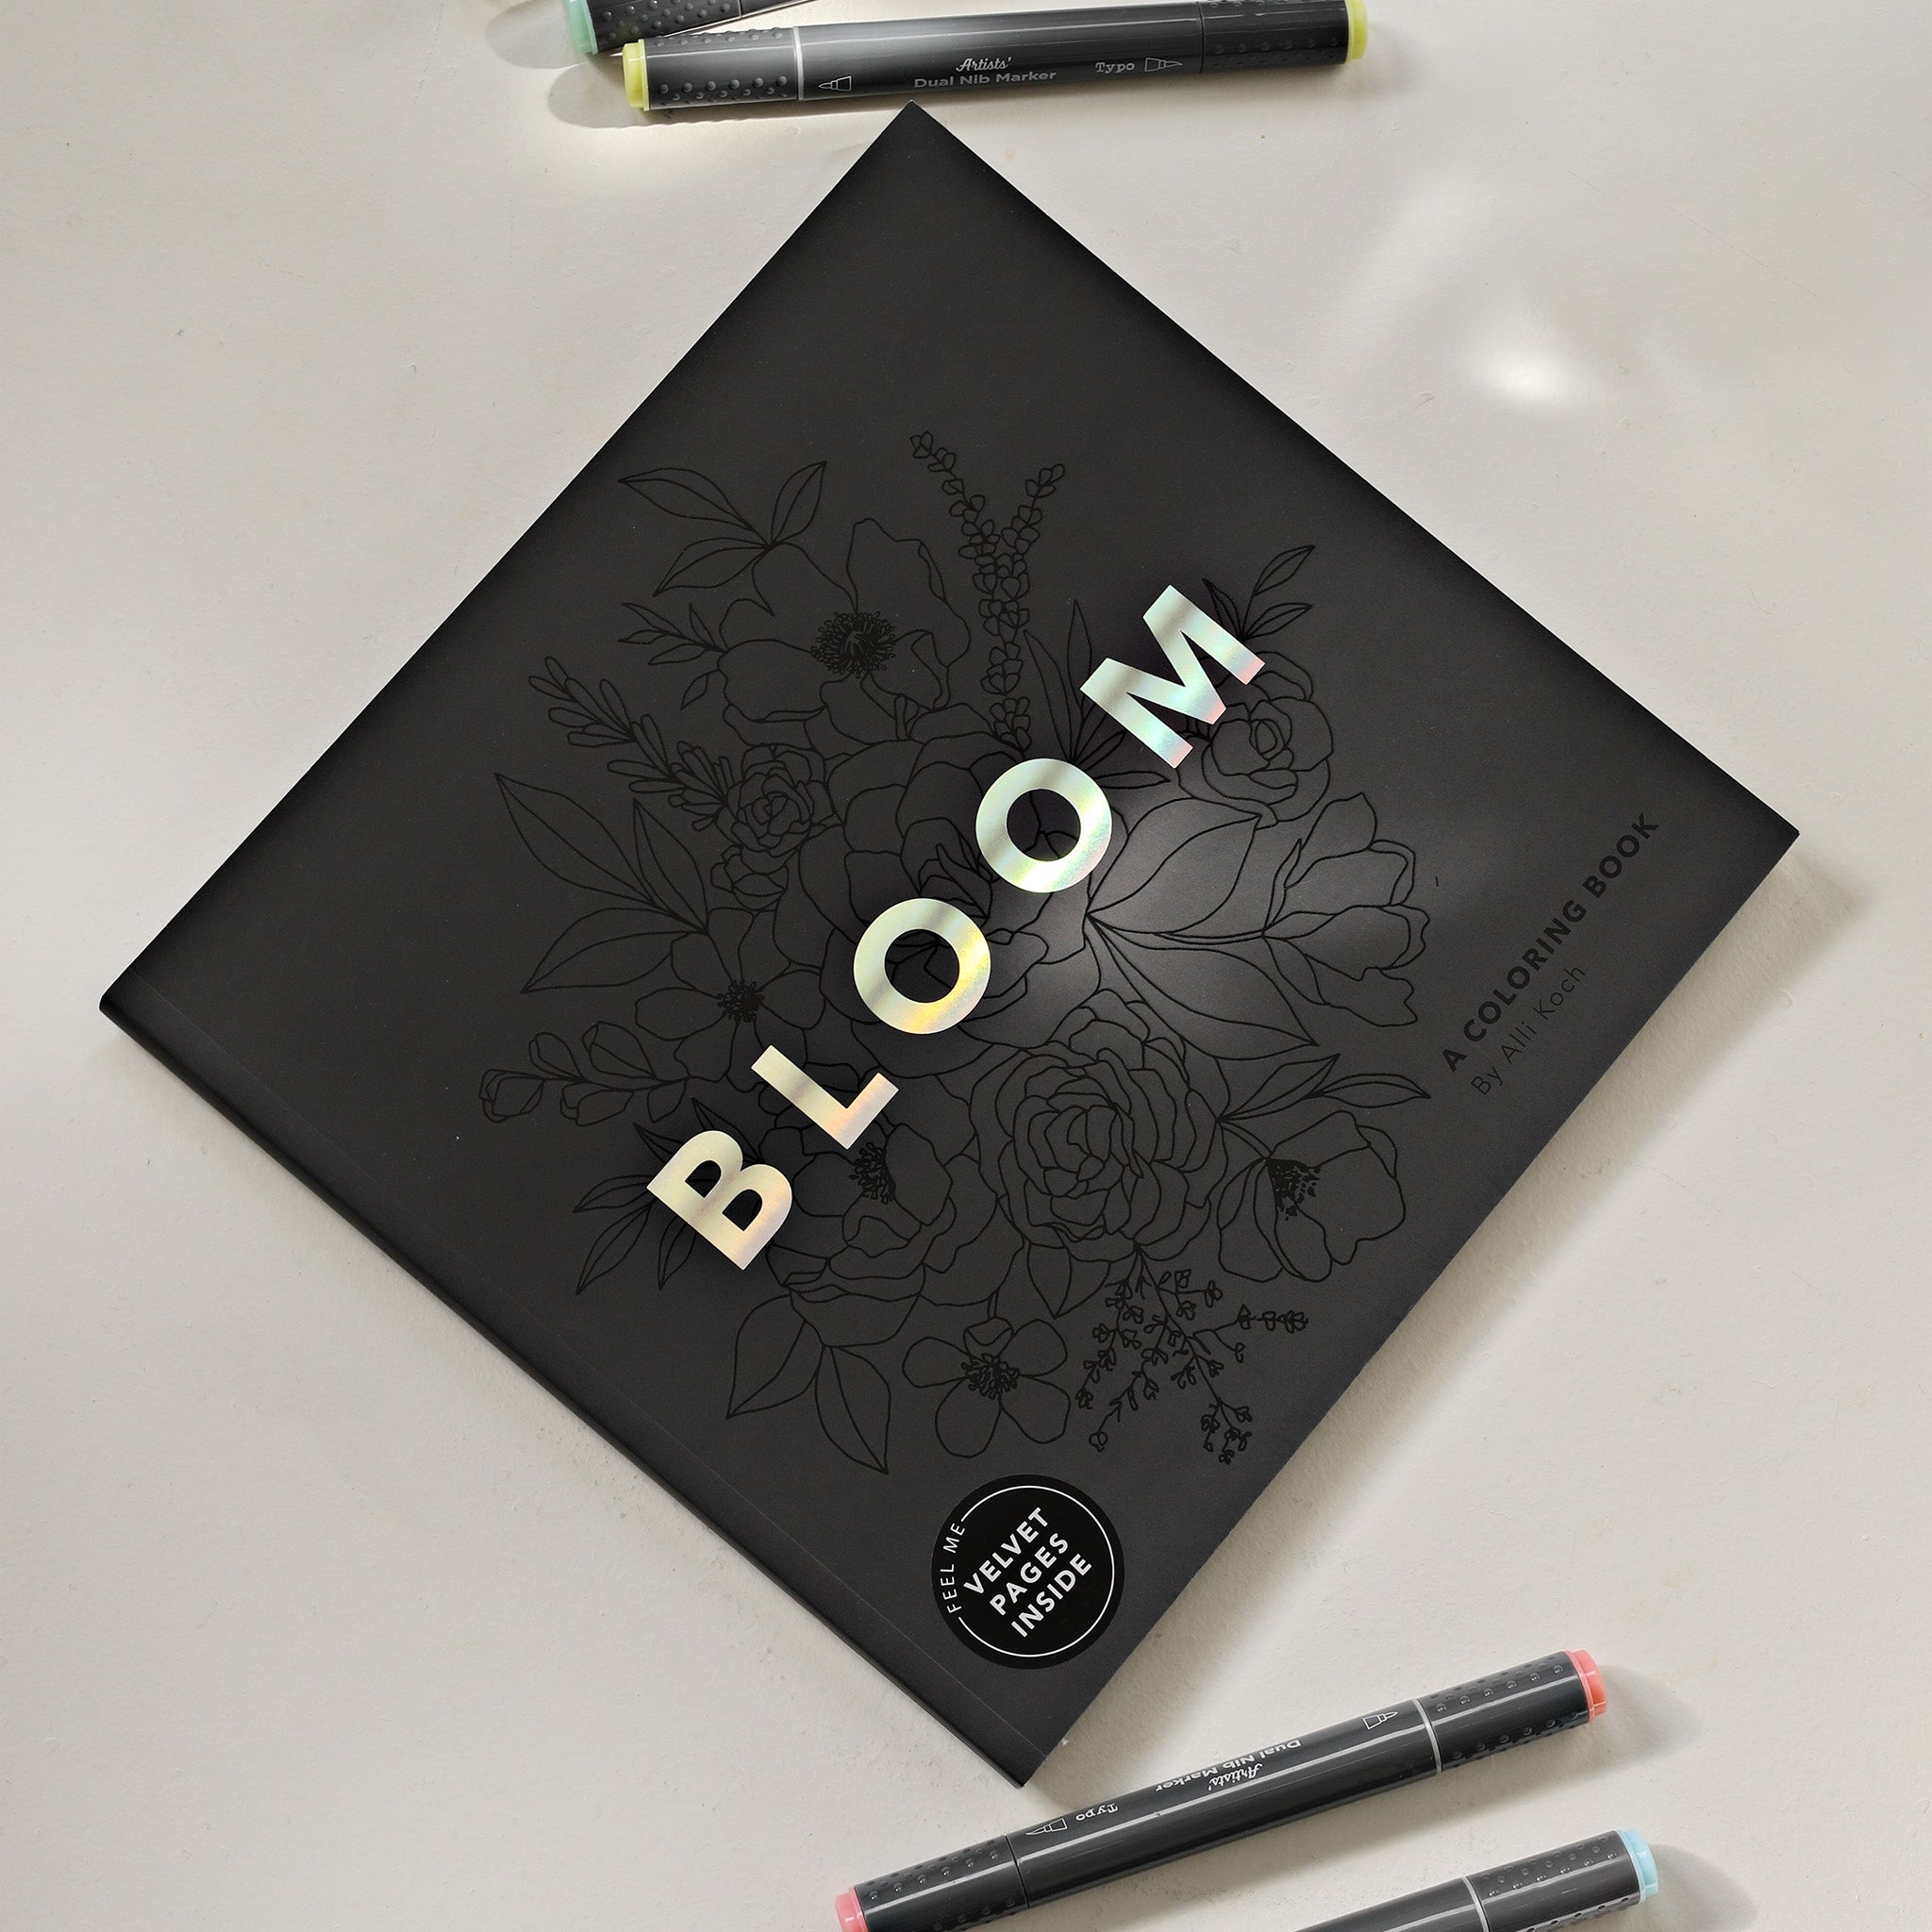 Bloom Coloring Book – Alli K Design Shop